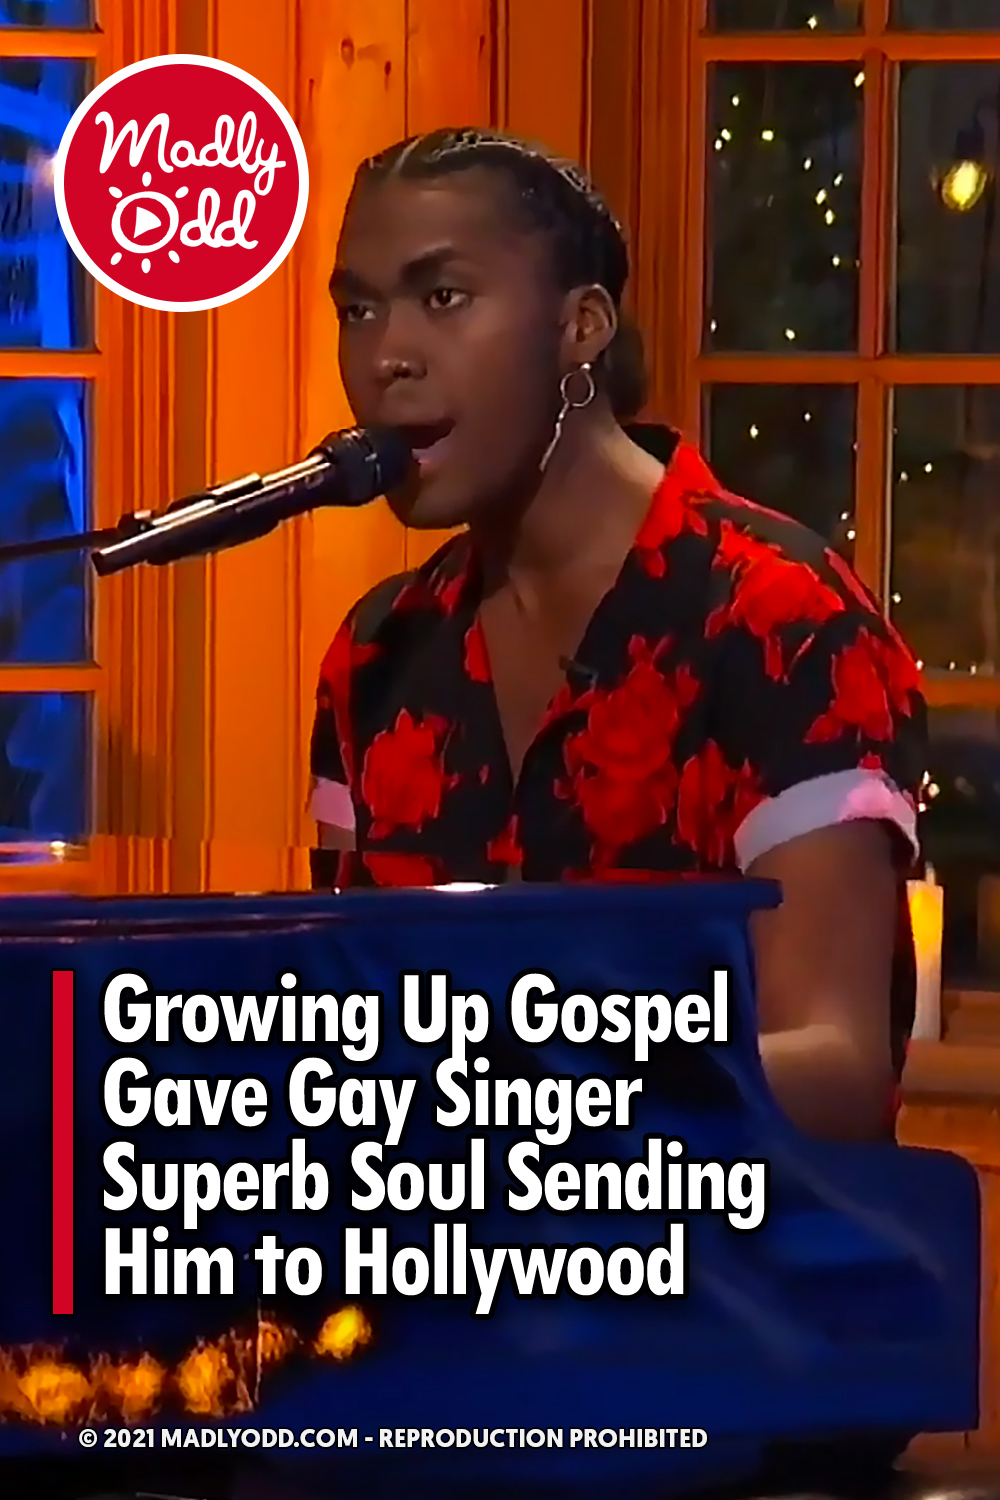 Growing up gospel gave gay singer superb soul sending him to Hollywood